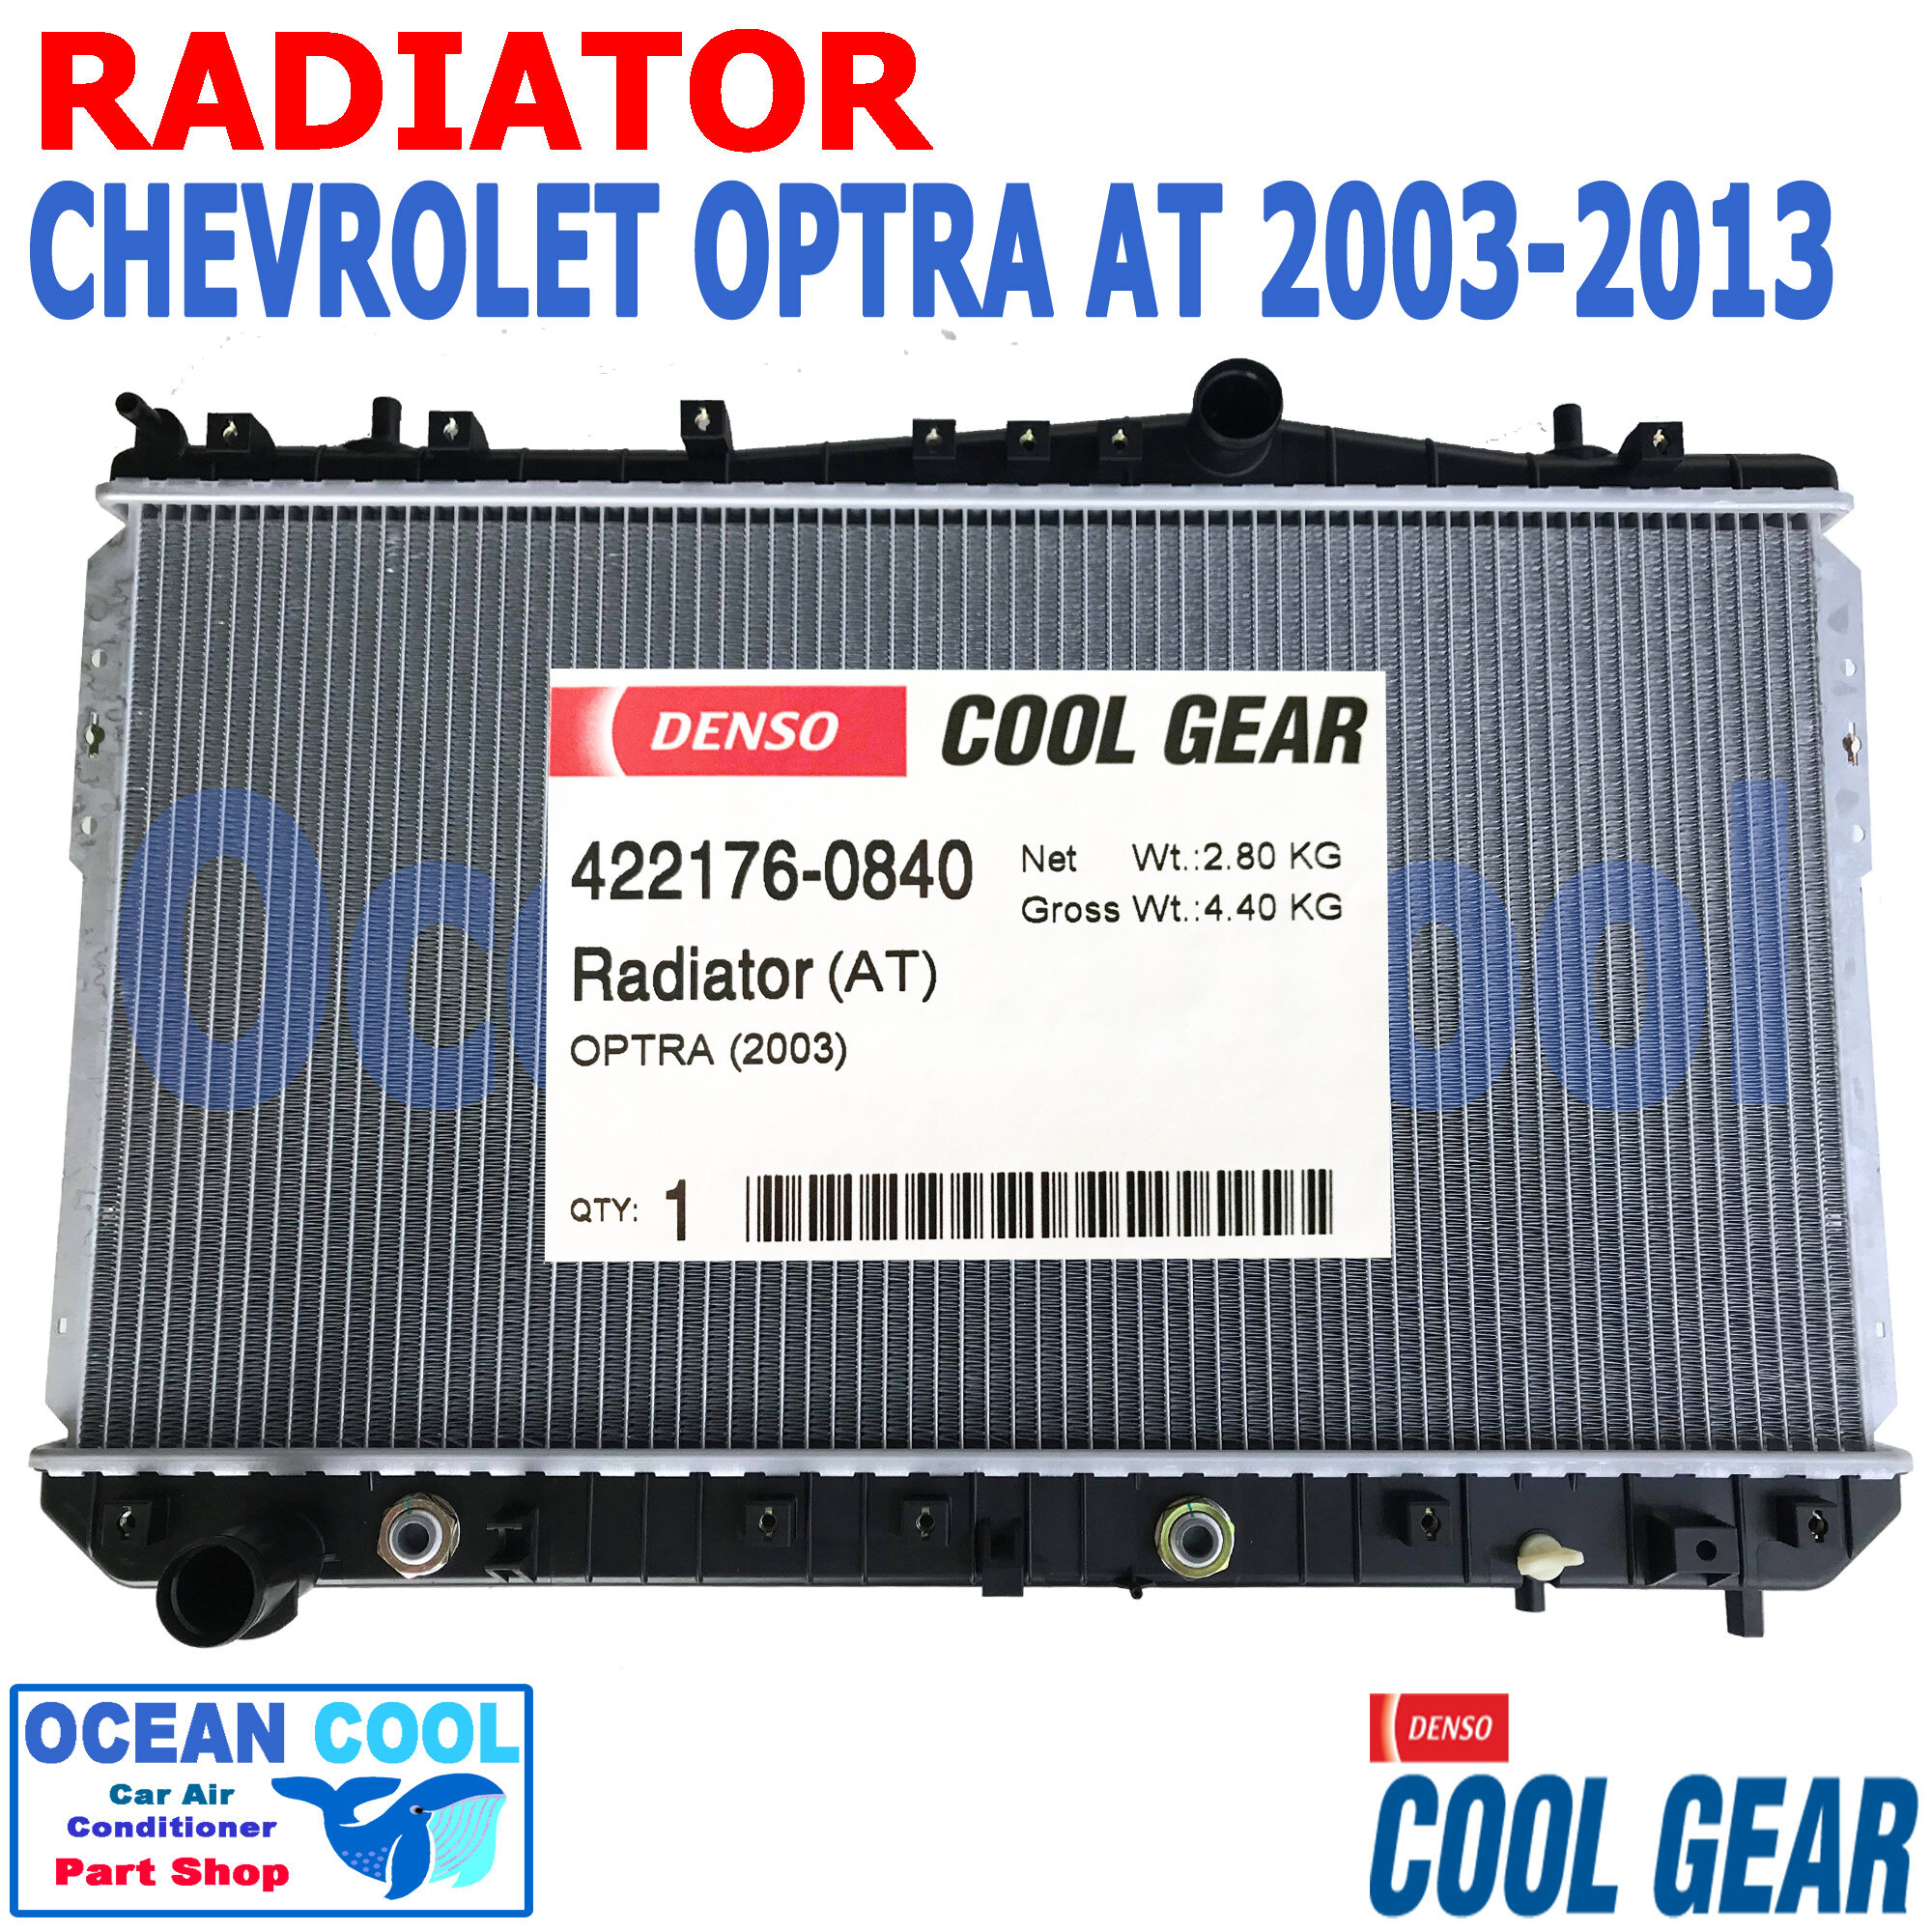 หม้อน้ำ เชฟโรเลต ออฟตร้า ปี 2003 - 2013 RD0049 พ.ศ 2546 - 2556 เกียร์ ออโต้ เครื่องยนต์ 1.6 ,1.8 รหัสสินค้า 422176-08404W COOL GEAR DENSO แท้  RADIATOR Chevrolet Optra 03  AT AUTO อะไหล่ ร